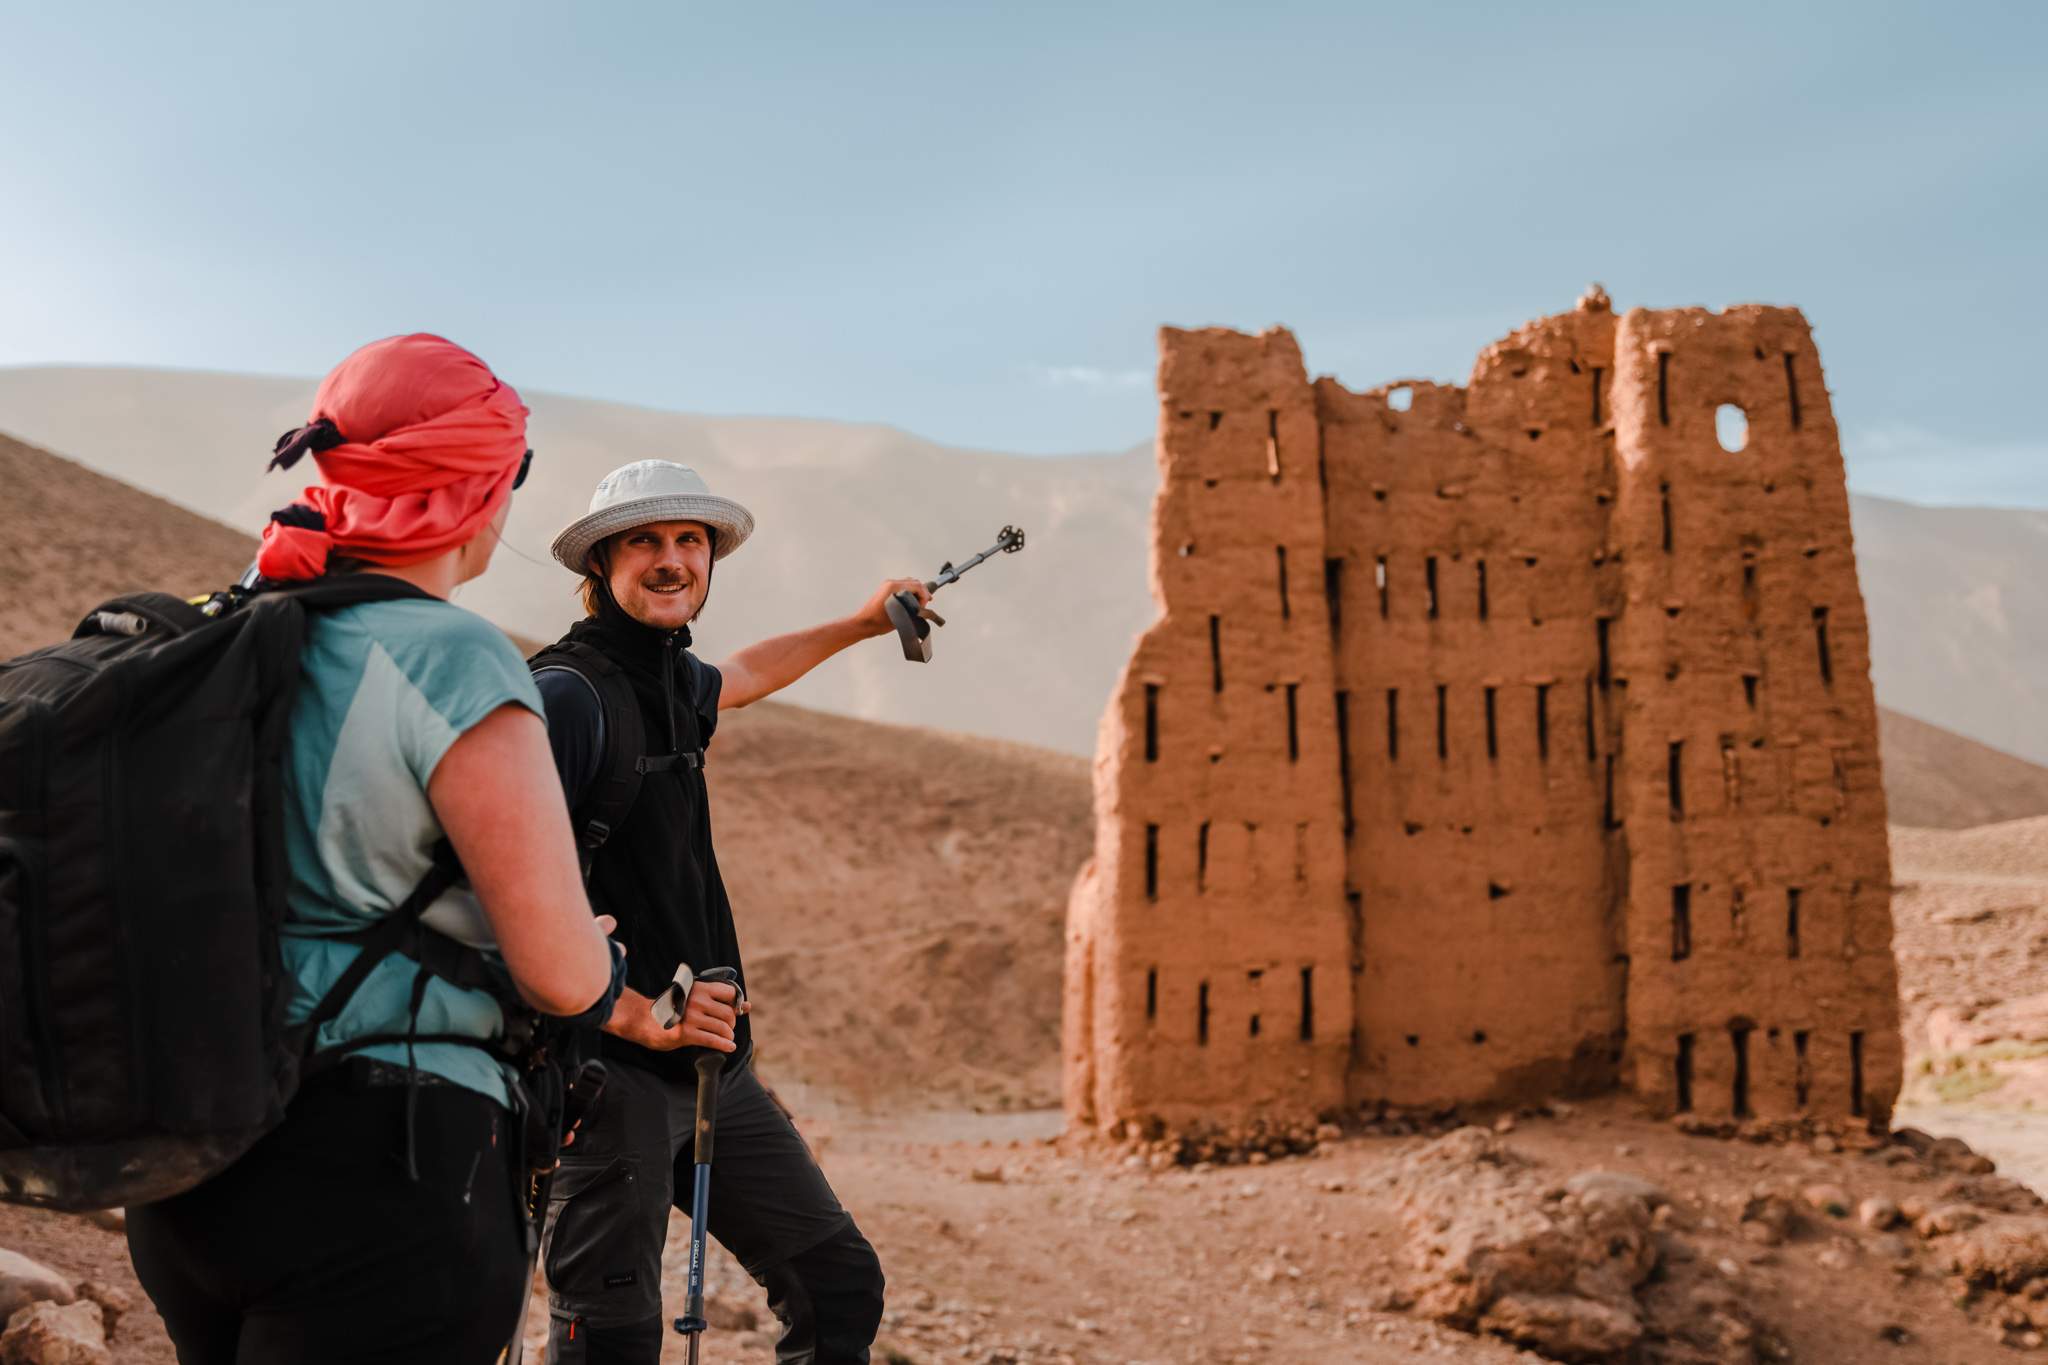 Hiken in Marokko ’s Hoge Atlasgebergte: wat kun je verwachten?